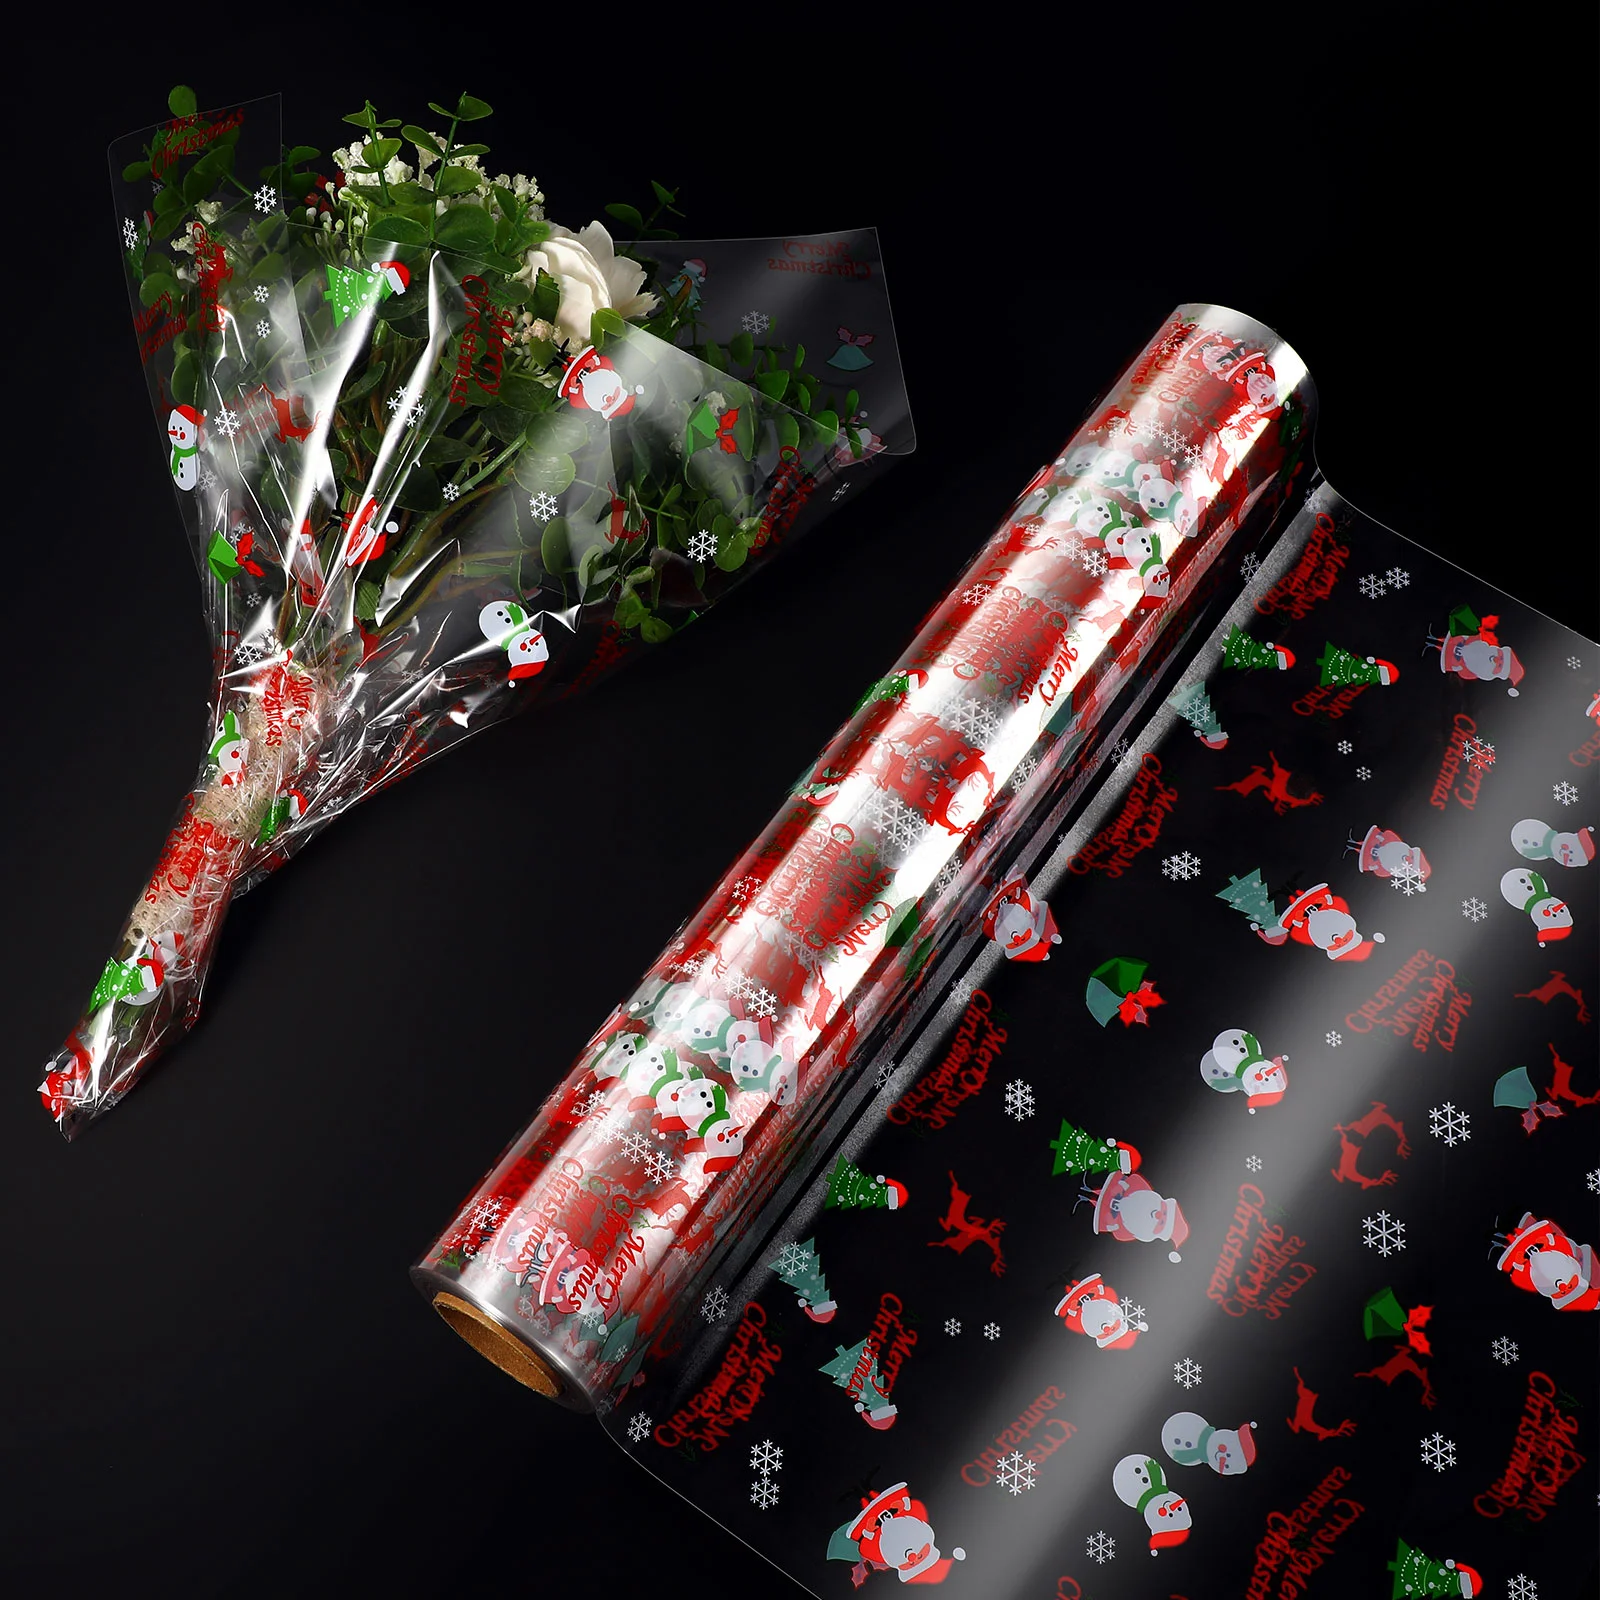 

Прозрачная целлофановая бумага STOBOK, 3 мил, Рождественская упаковочная бумага, декоративная целлофановая упаковочная бумага, рулон, подарочные корзины